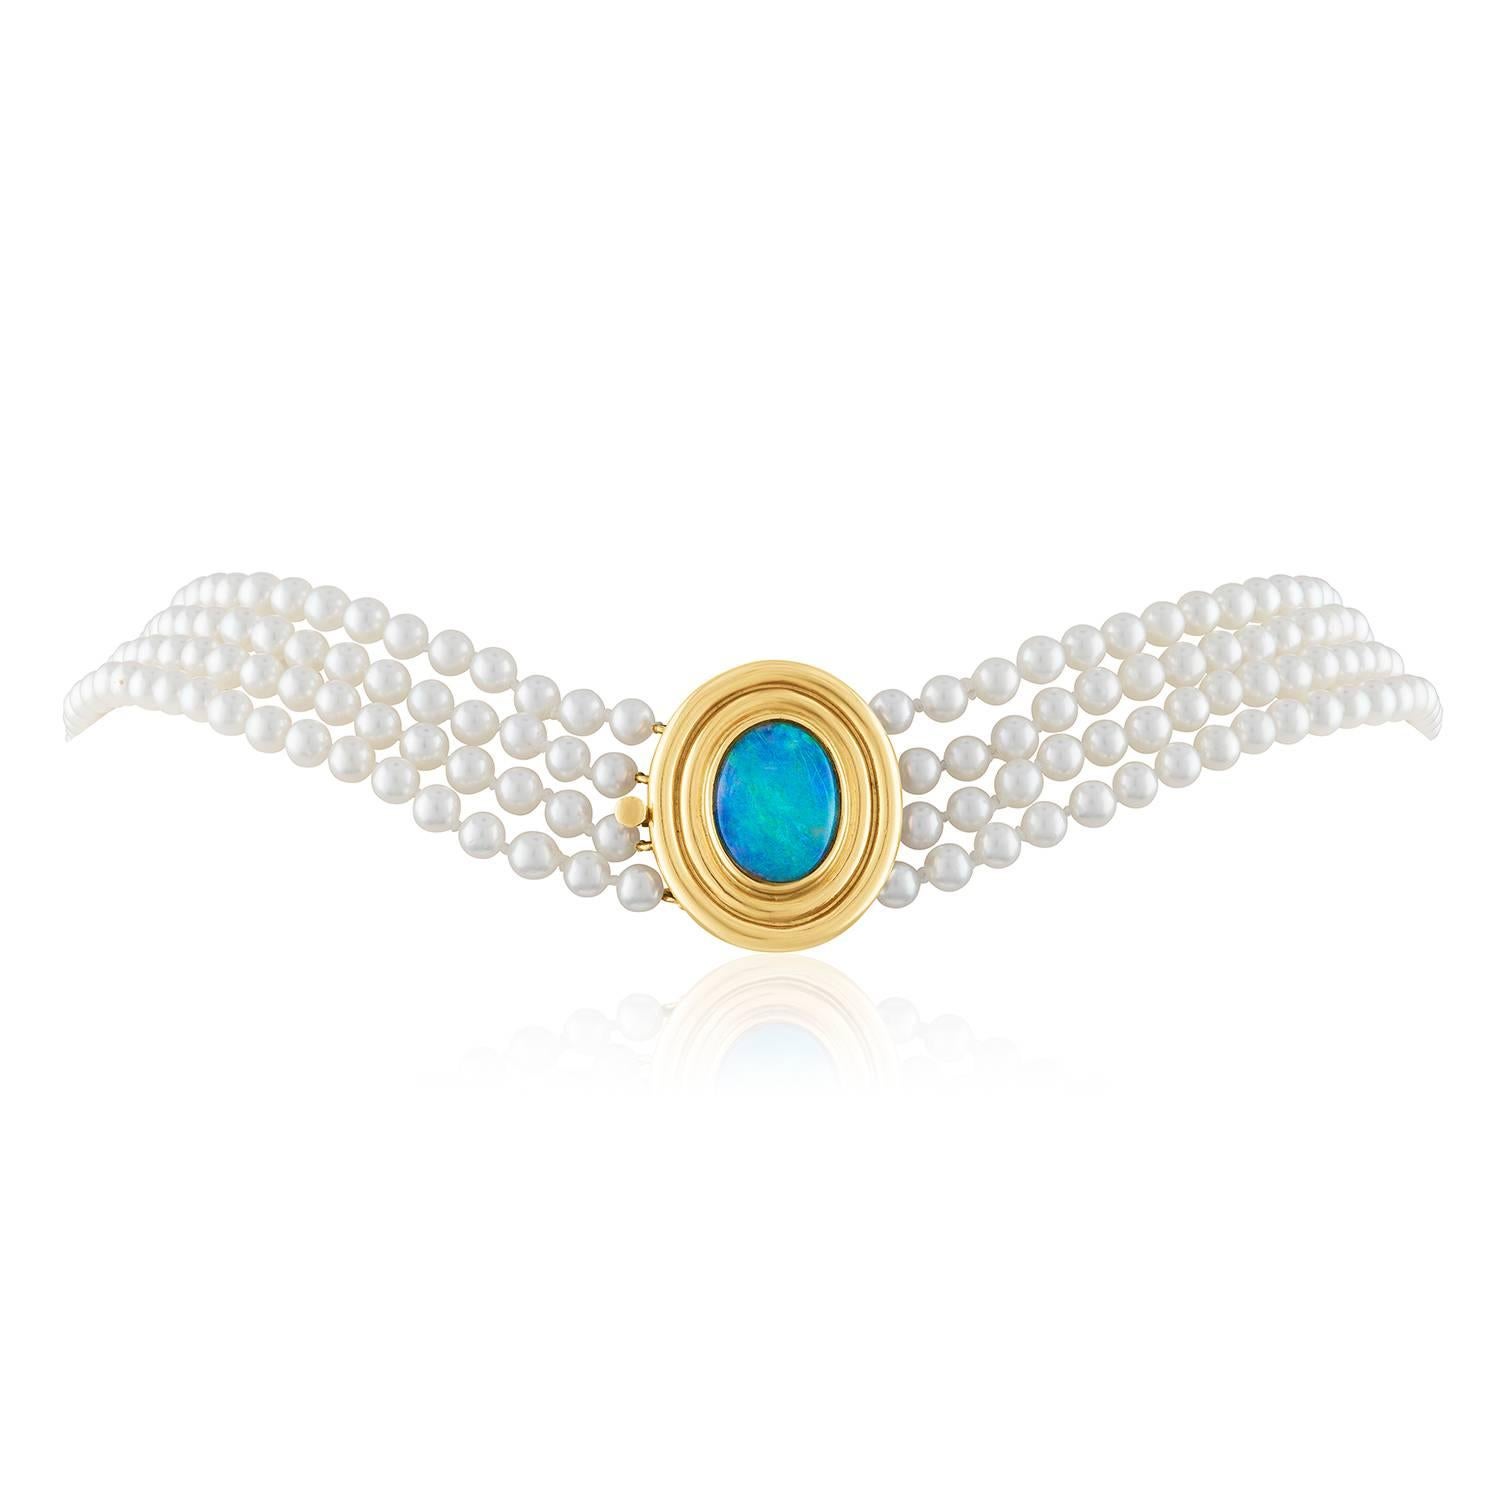 Collier de perles à 4 brins très classique
Le fermoir est en or jaune 14K
Les perles mesurent 4,0 mm
Les perles sont des perles Akoya de culture.
Le fermoir a une Opale australienne
Le collier mesure 16,75